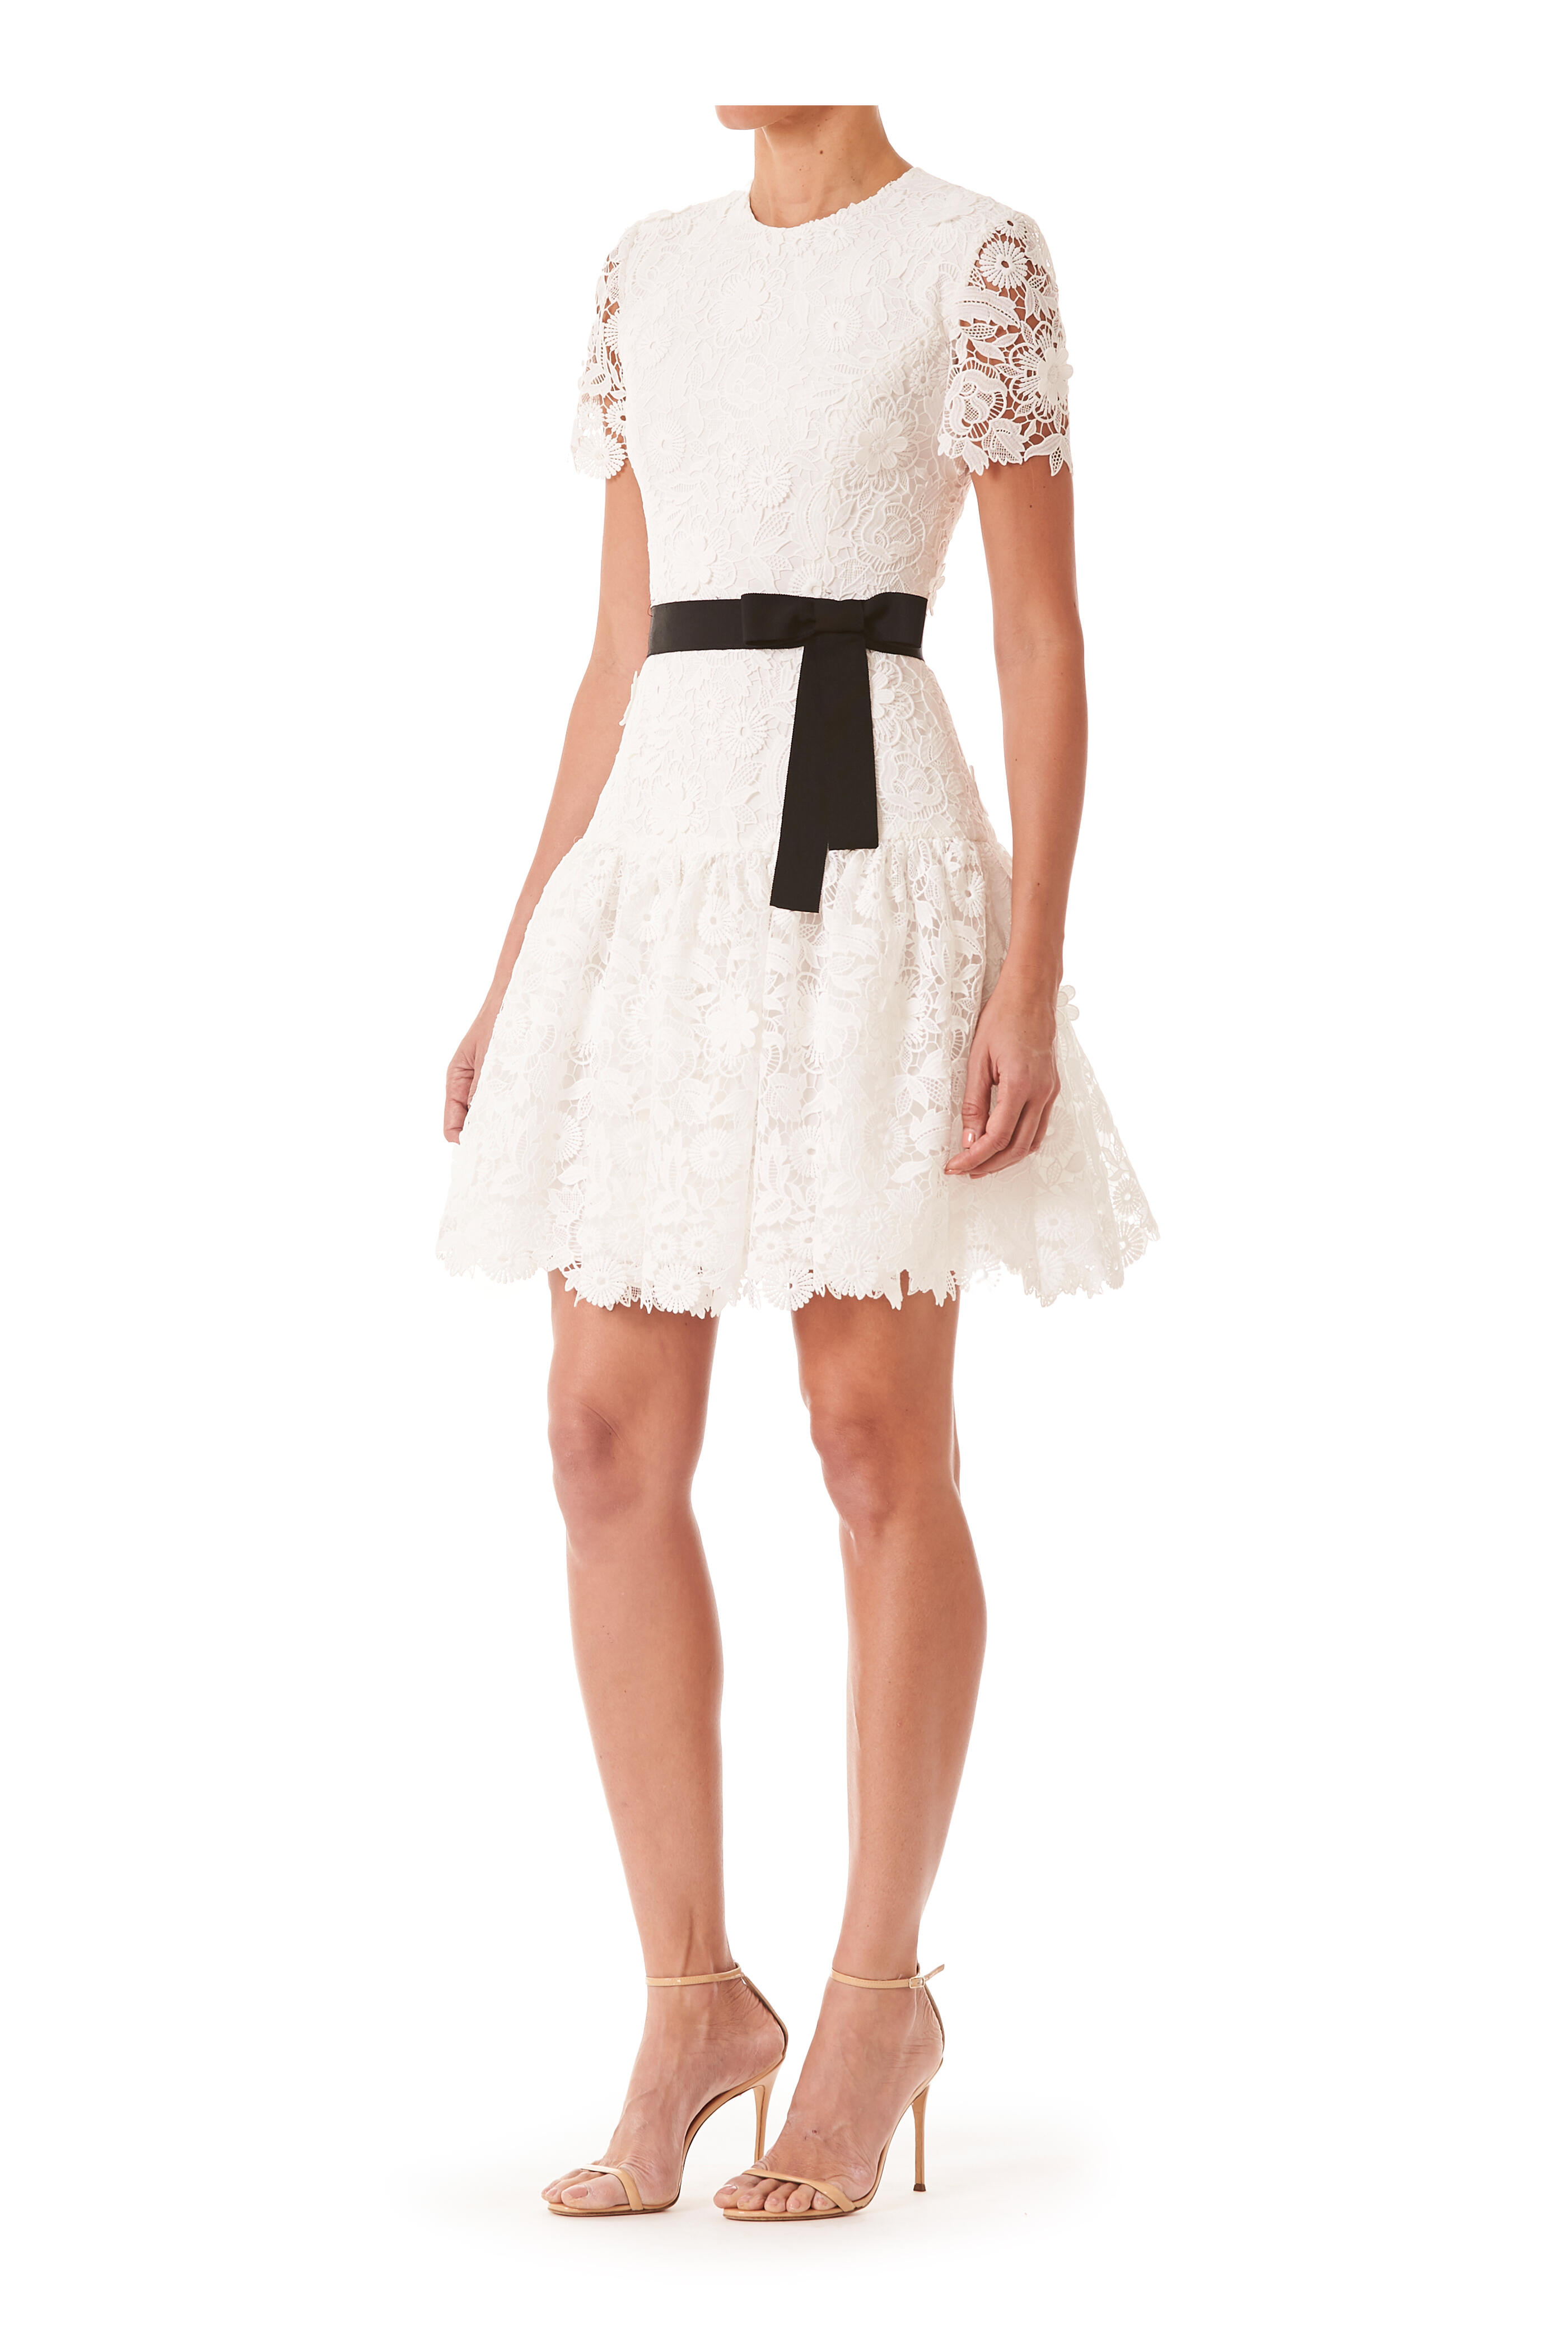 Carolina Herrera - White Lace Short Sleeve Dress